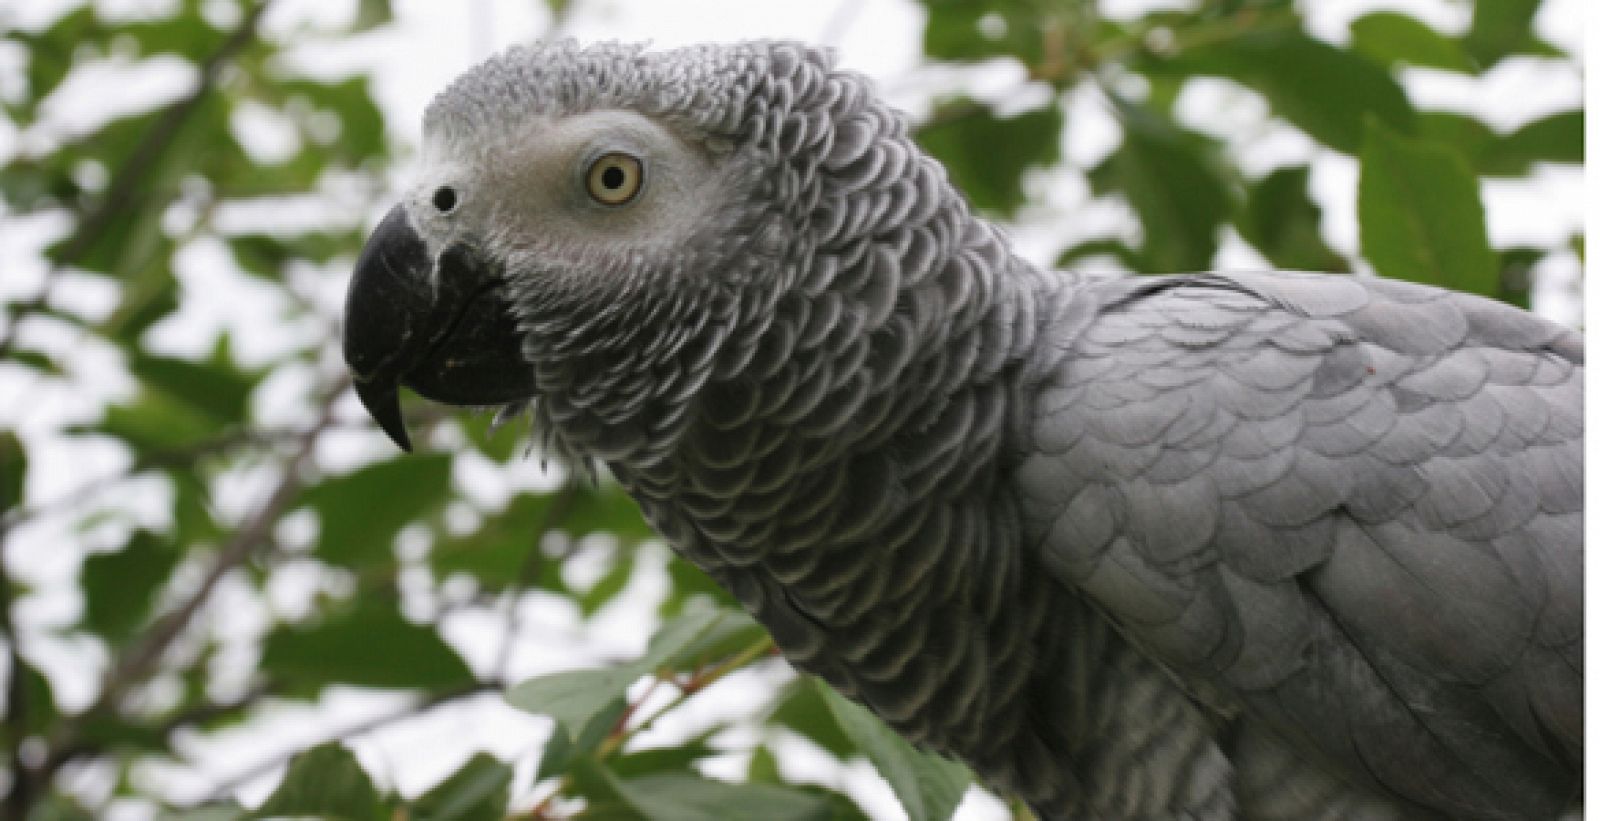 Ejemplar de papagayo gris africano, que según la investigación tiene una pensamiento lógico innato